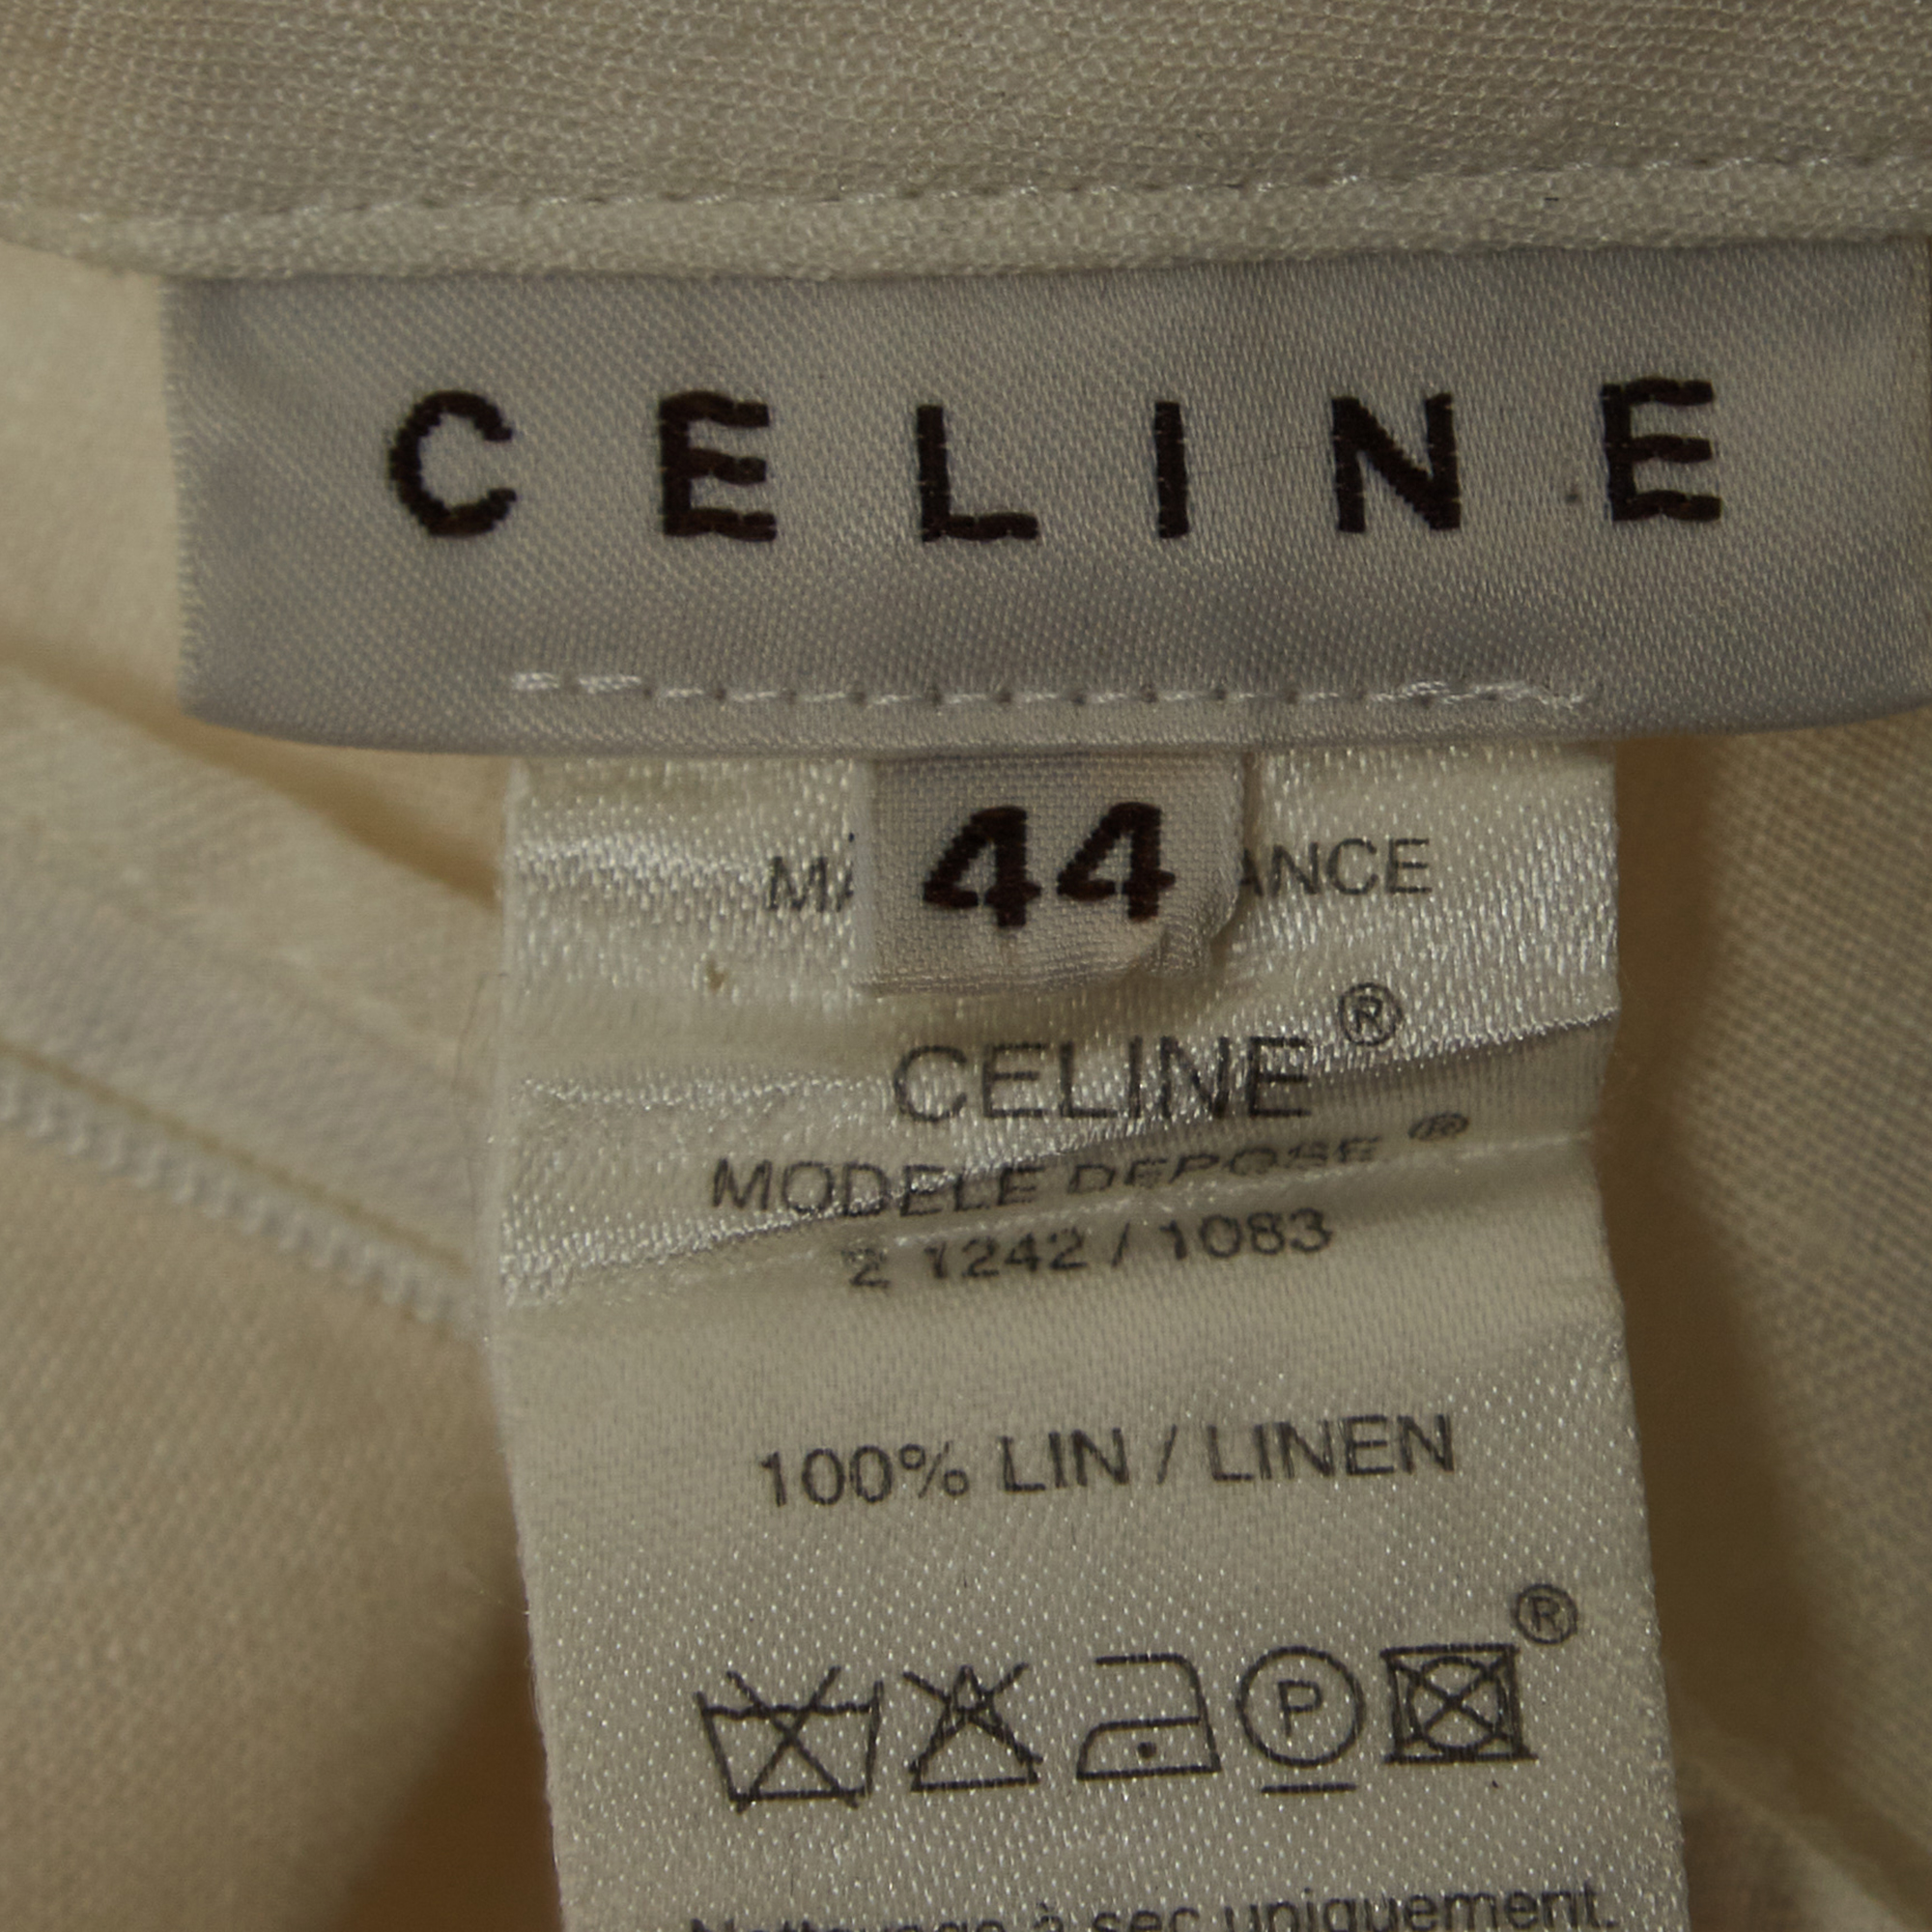 Celine Off White Linen Eyelet Patterned Top & Pants Set L